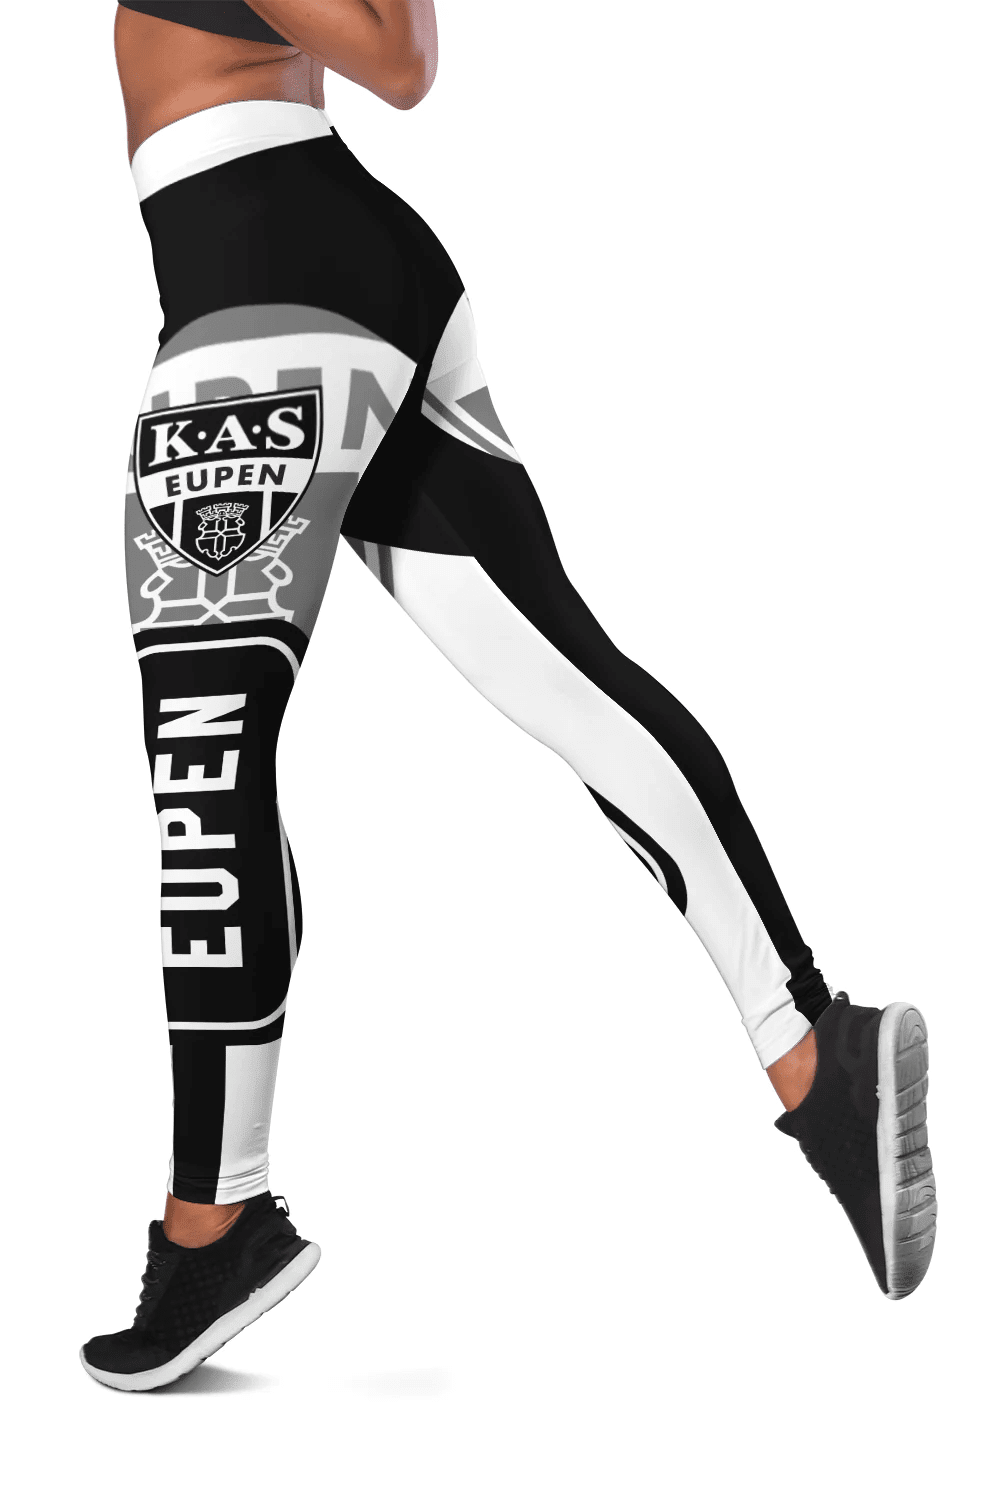 KAS Eupen New Legging Style